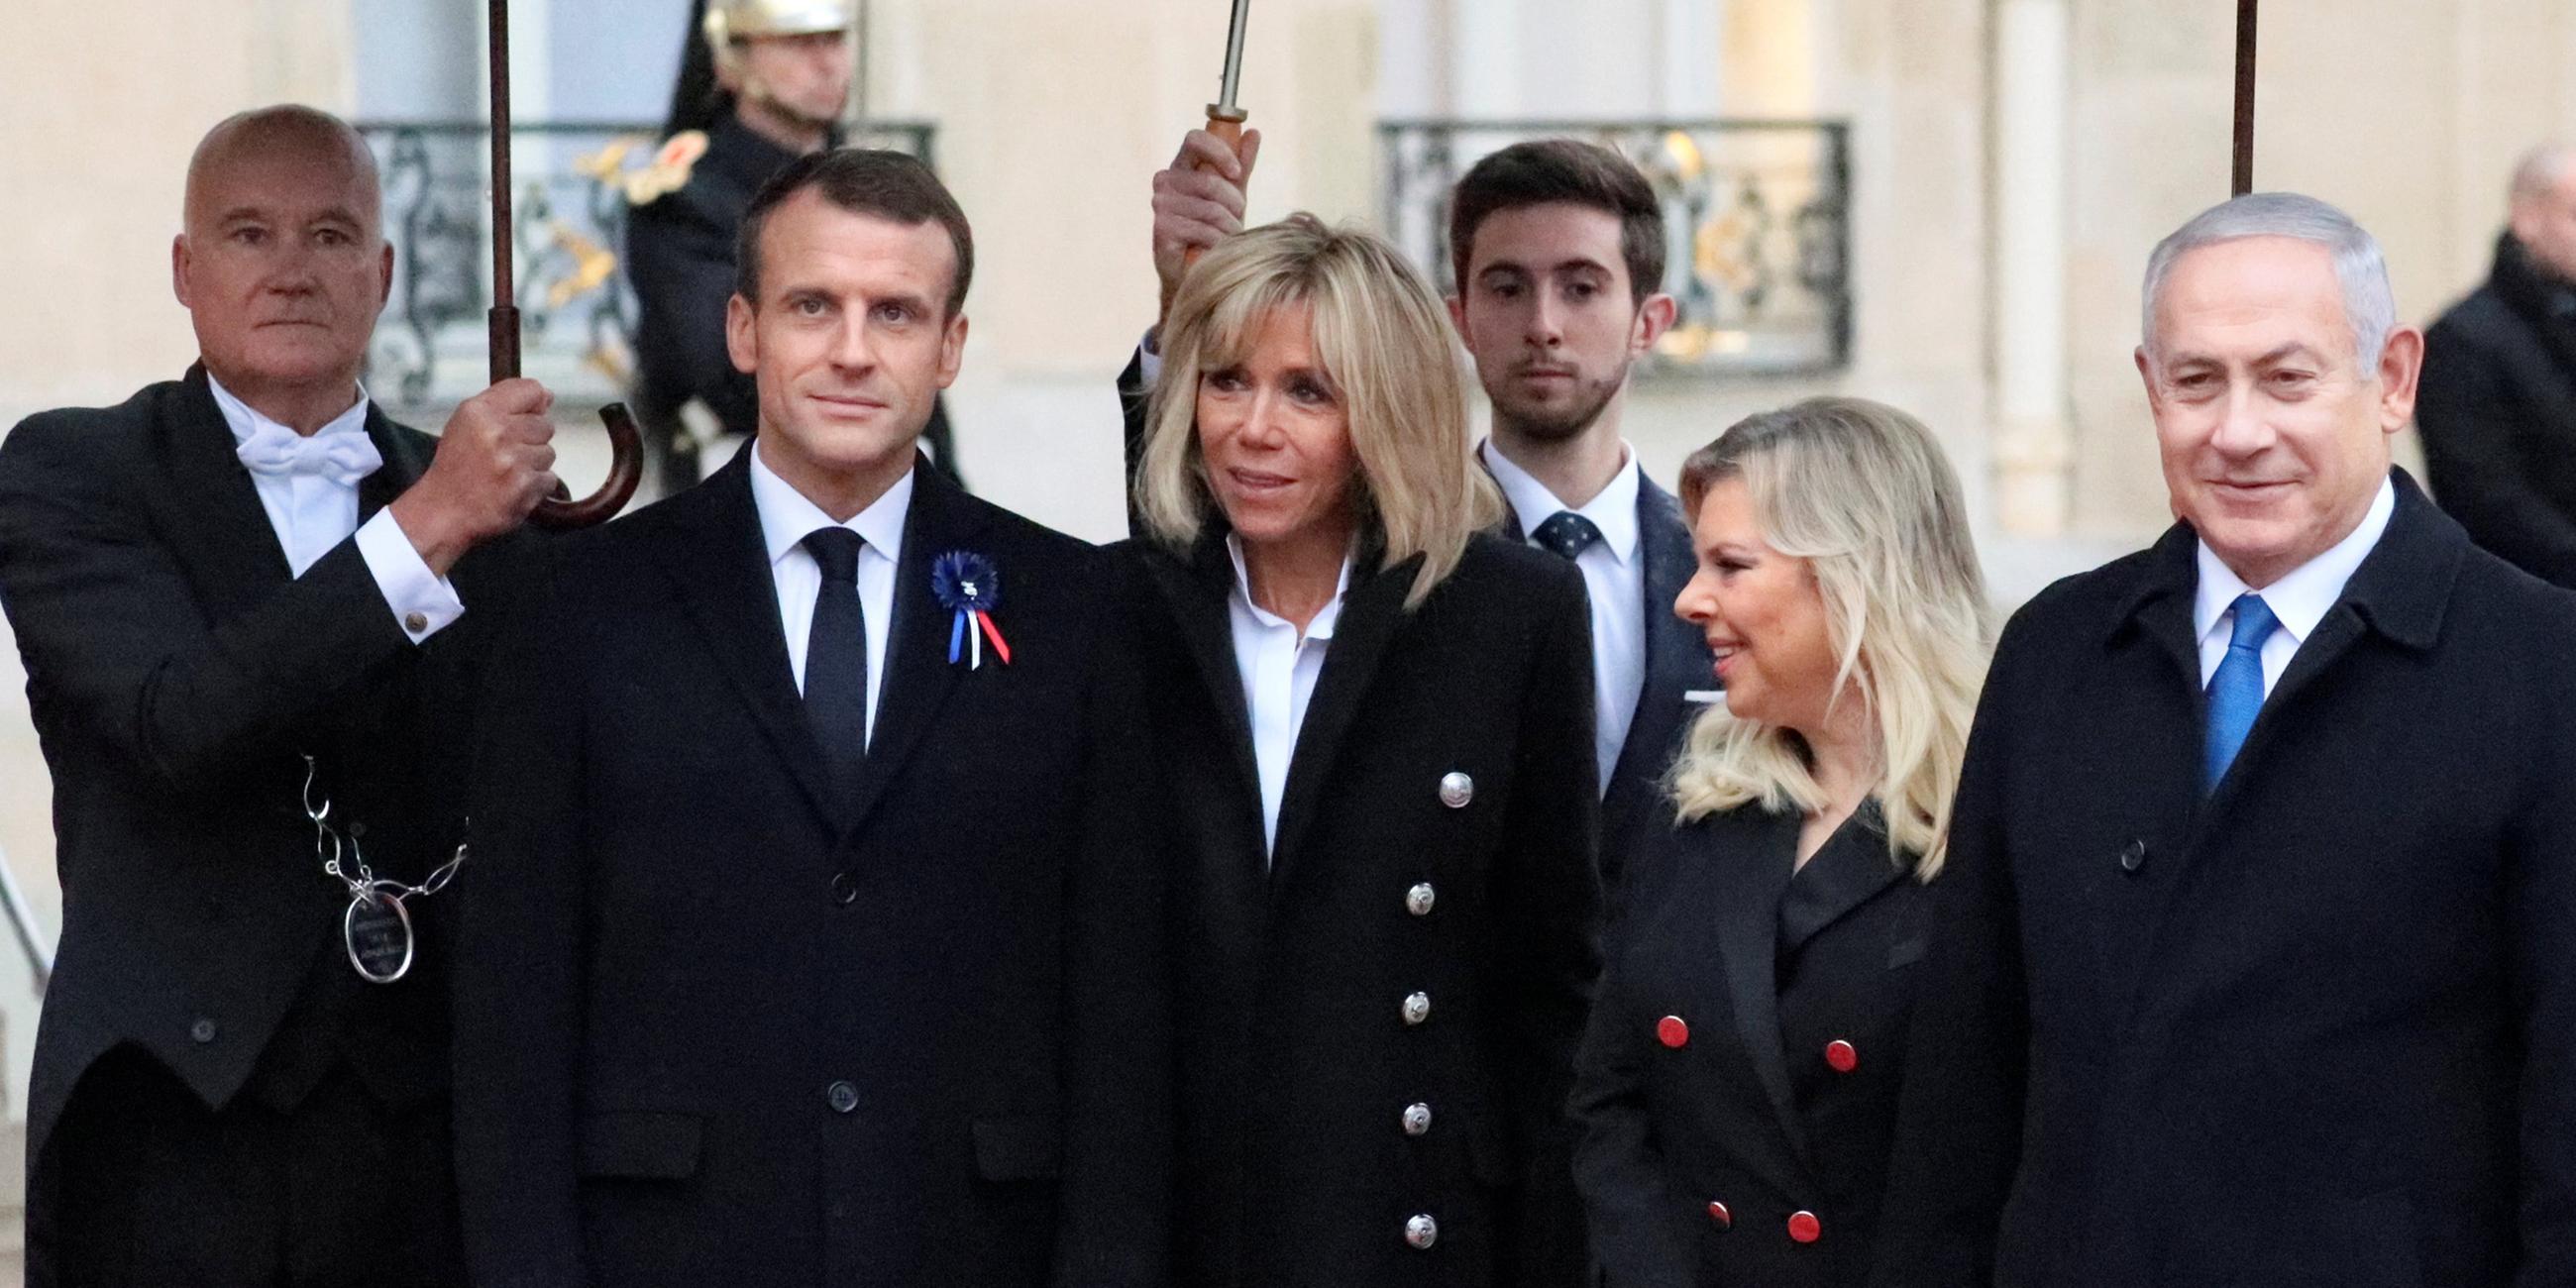 Emmanuel Macron und seine Frau Brigitte begrüßen Benjamin Netanjahu und seine Frau Sara am 11.11.2018 in Paris